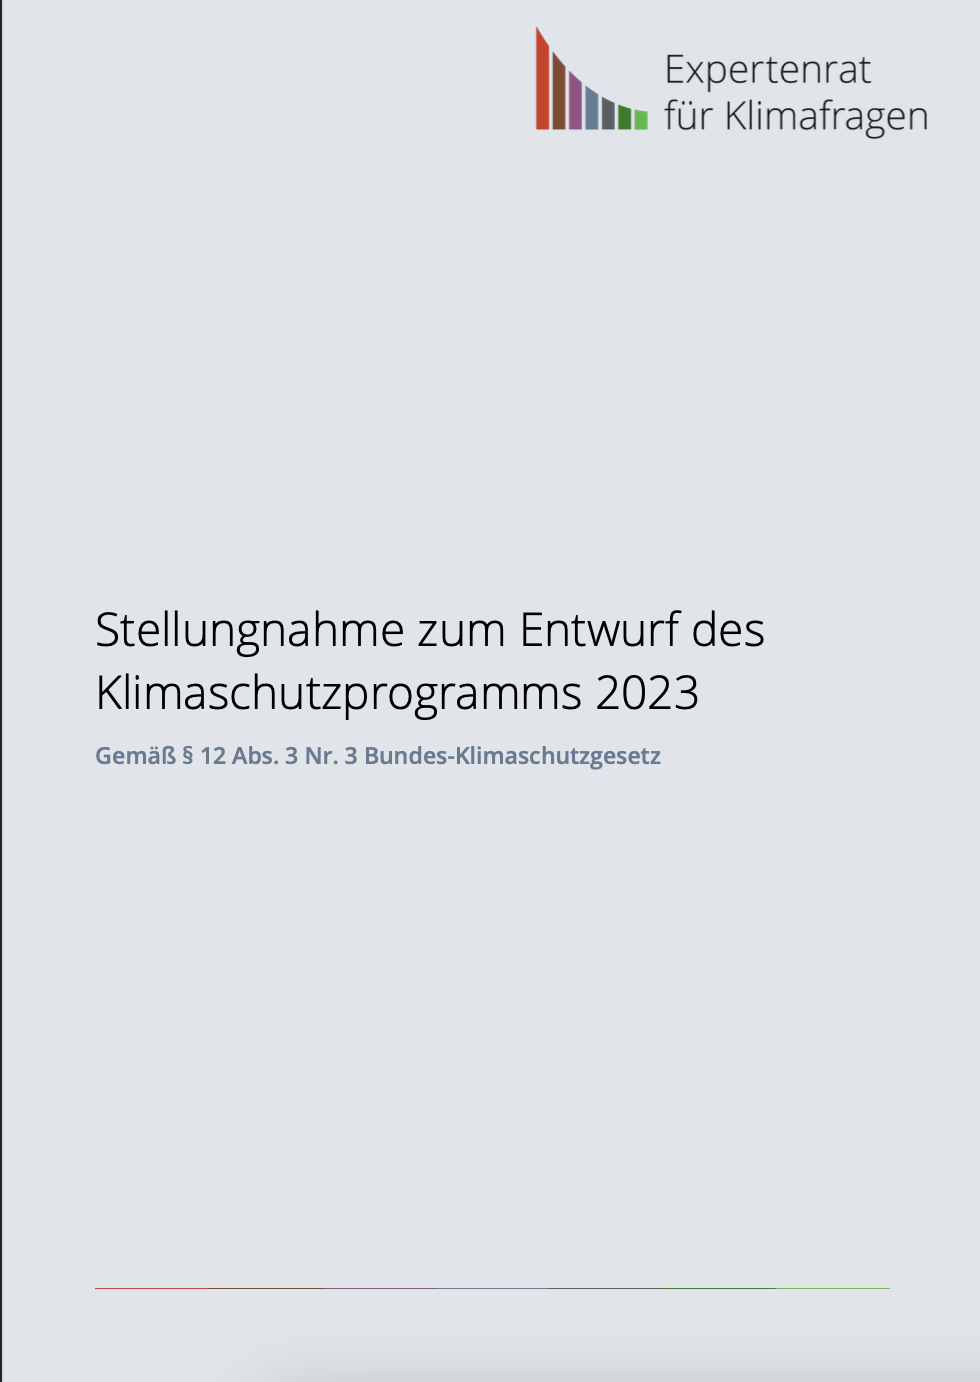 Stellungnahme zum Entwurf des Klimaschutzprogramms 2023